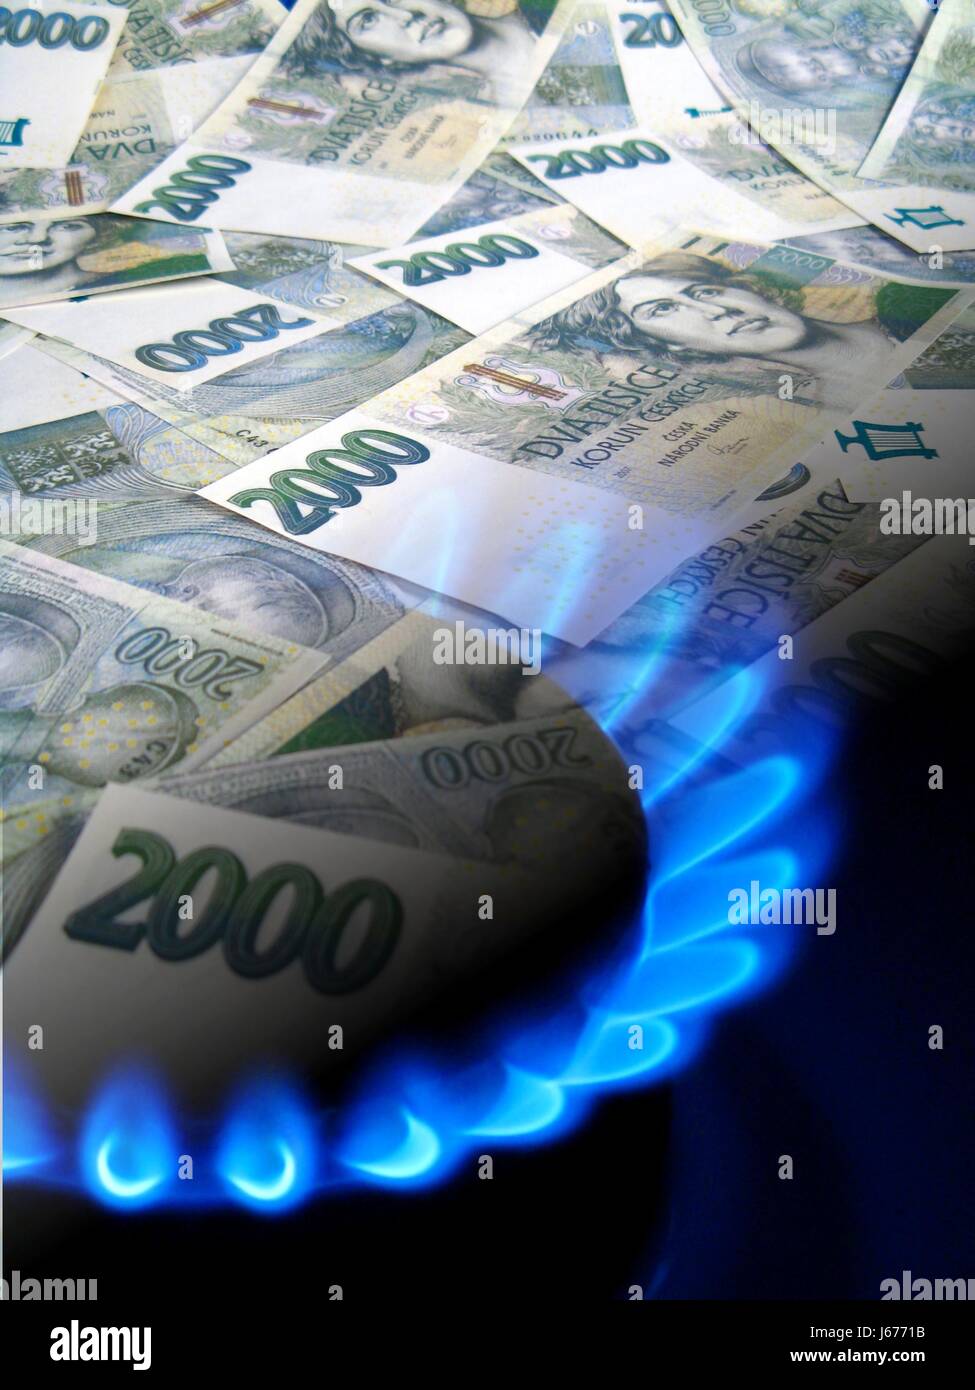 Flamme Flammen Kaminofen Notizen Gas Tschechische Geld Krone Hausbau Stockfoto